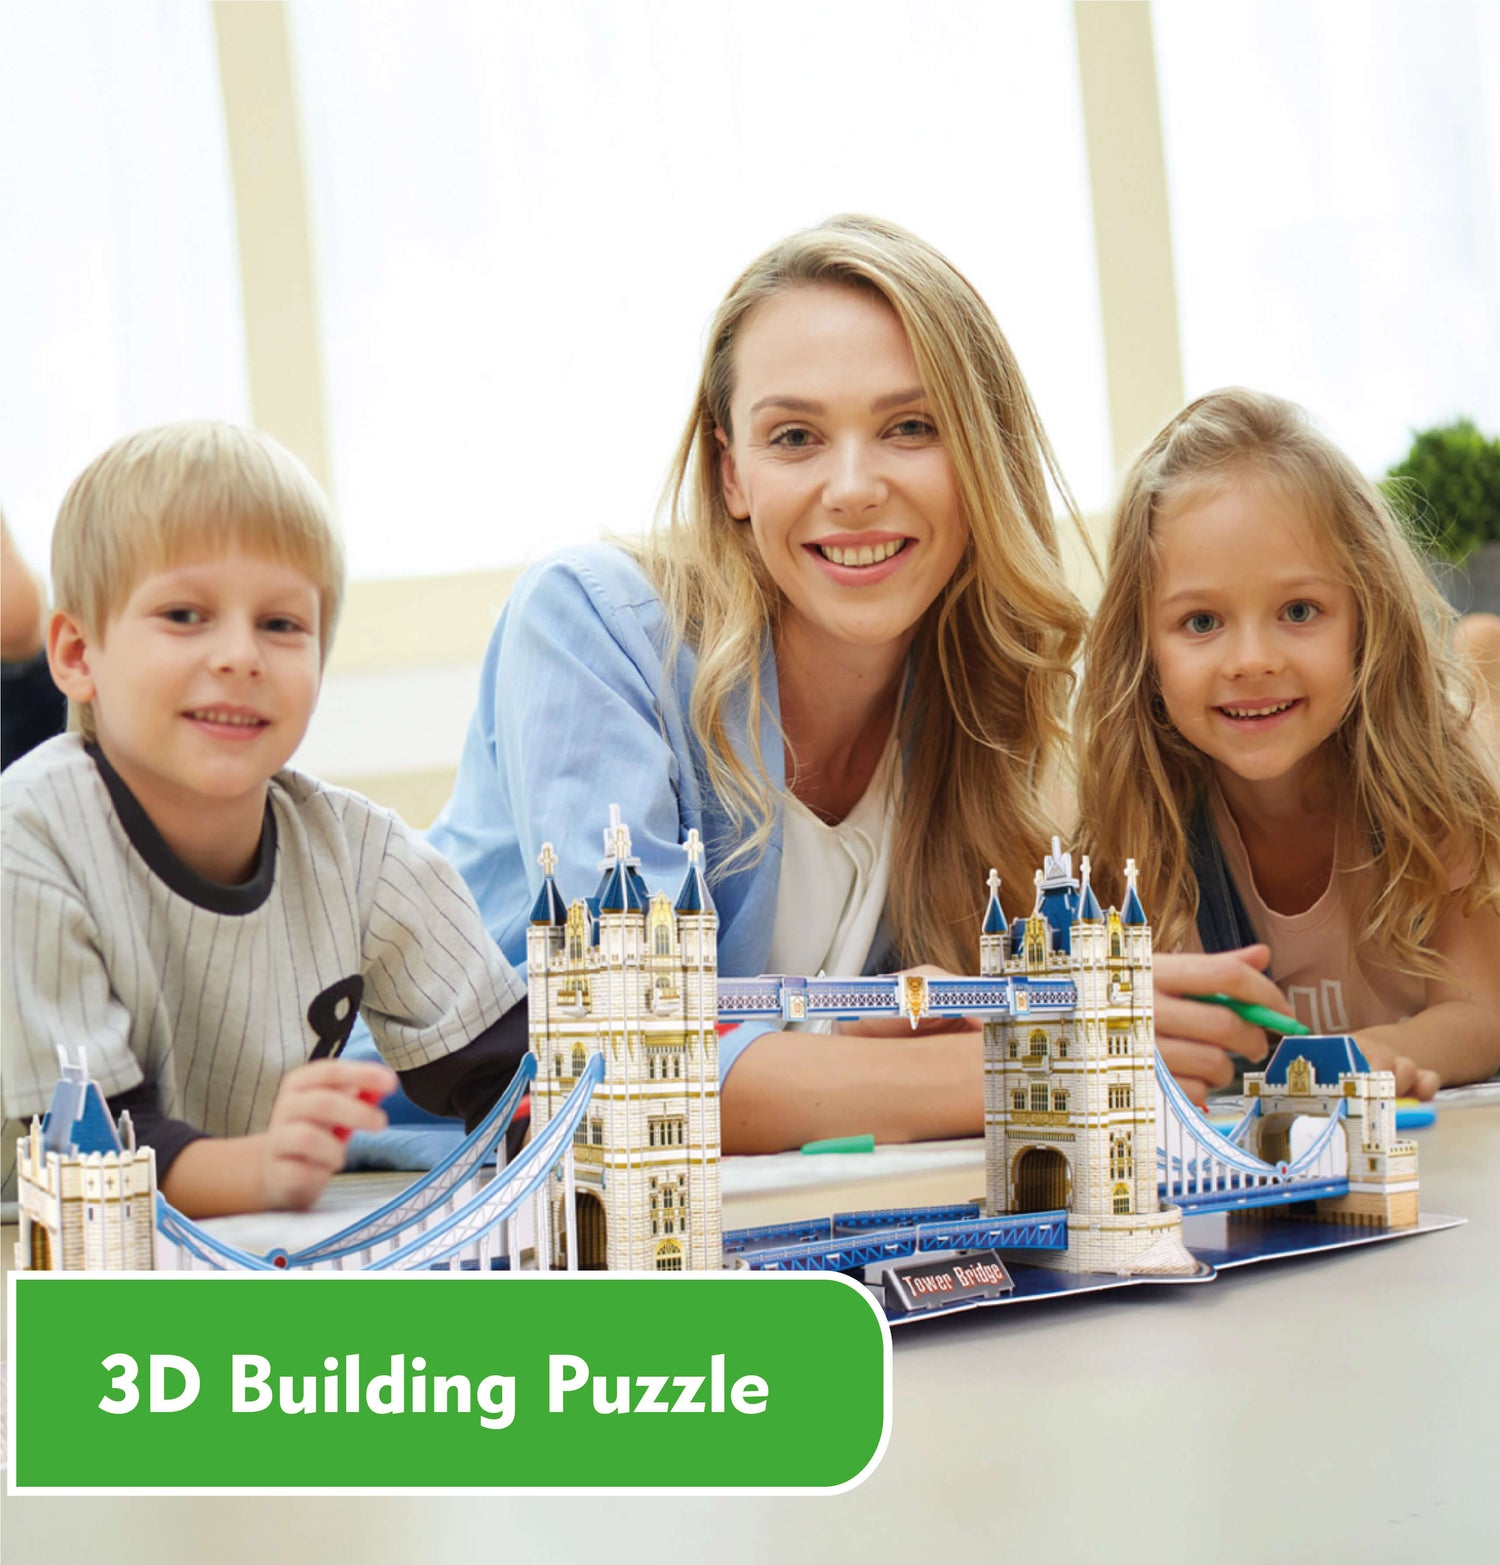 3D Building Puzzle